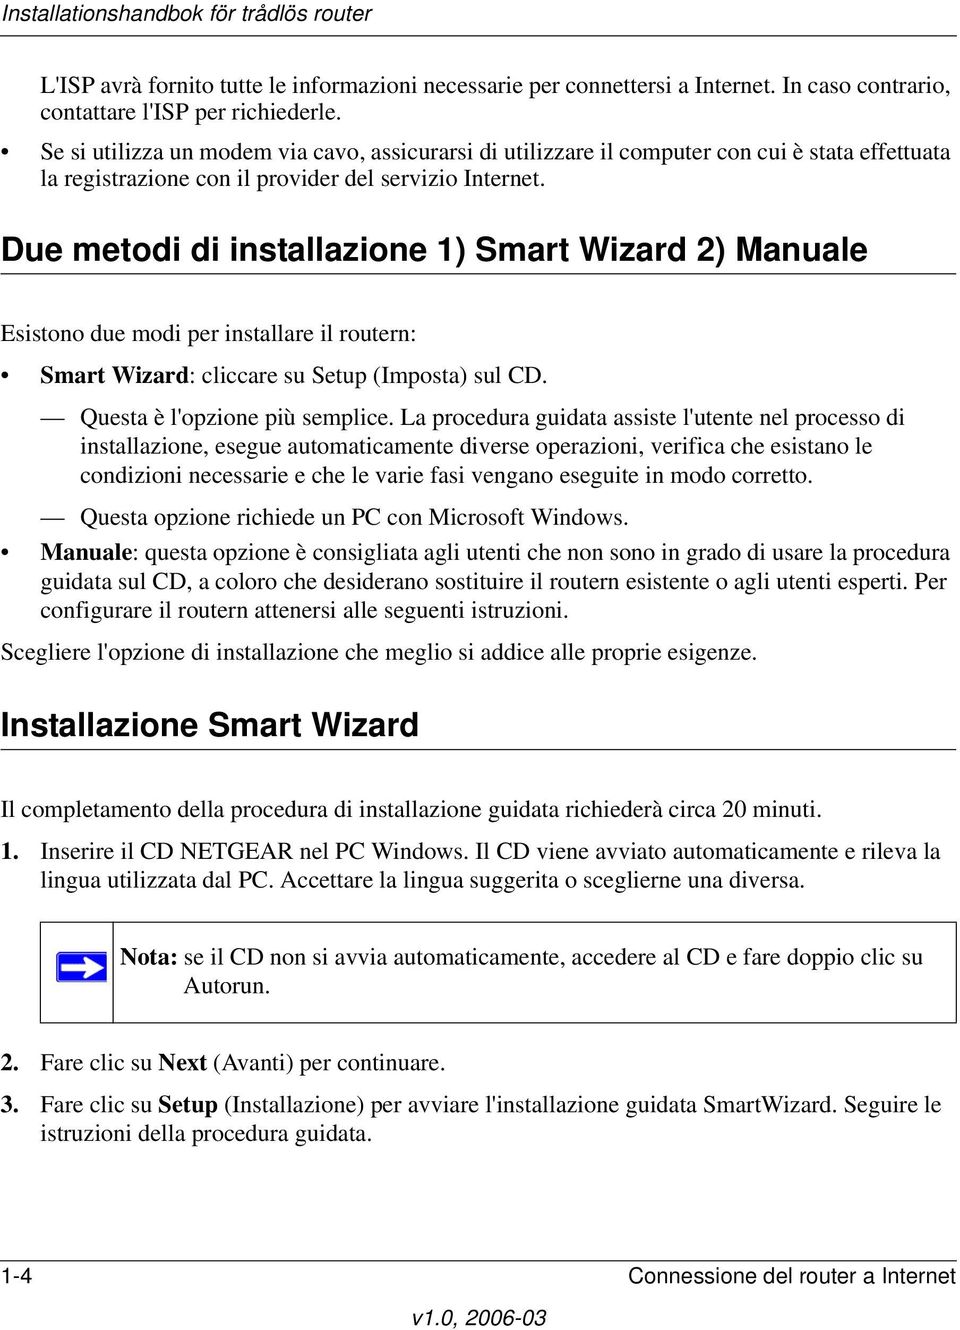 Due metodi di installazione 1) Smart Wizard 2) Manuale Esistono due modi per installare il routern: Smart Wizard: cliccare su Setup (Imposta) sul CD. Questa è l'opzione più semplice.